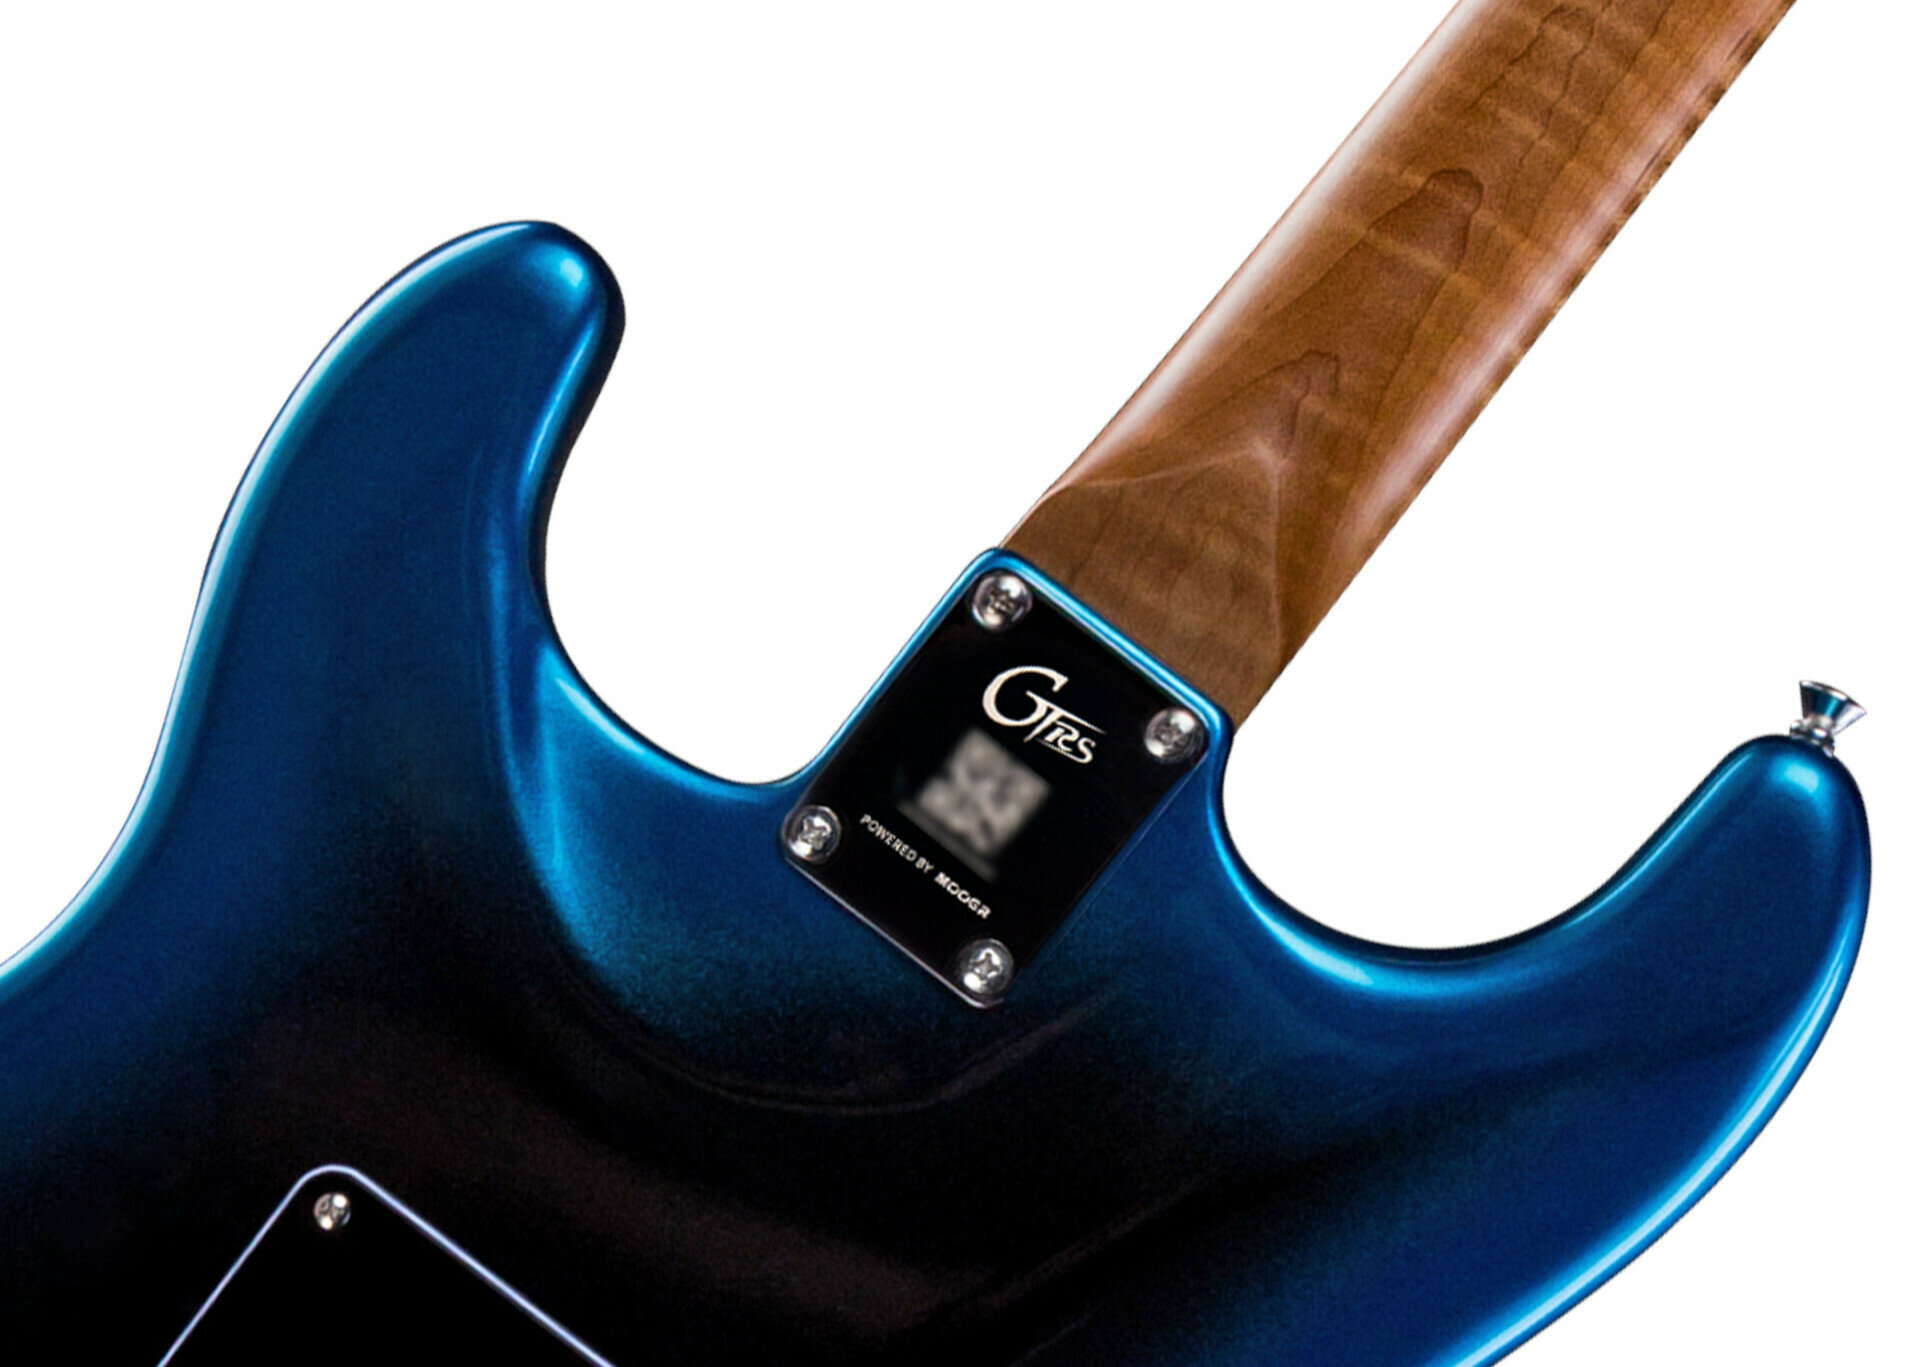 Mooer Gtrs P800 Pro Intelligent Guitar Hss Trem Rw - Dark Night - Modeling guitar - Variation 2